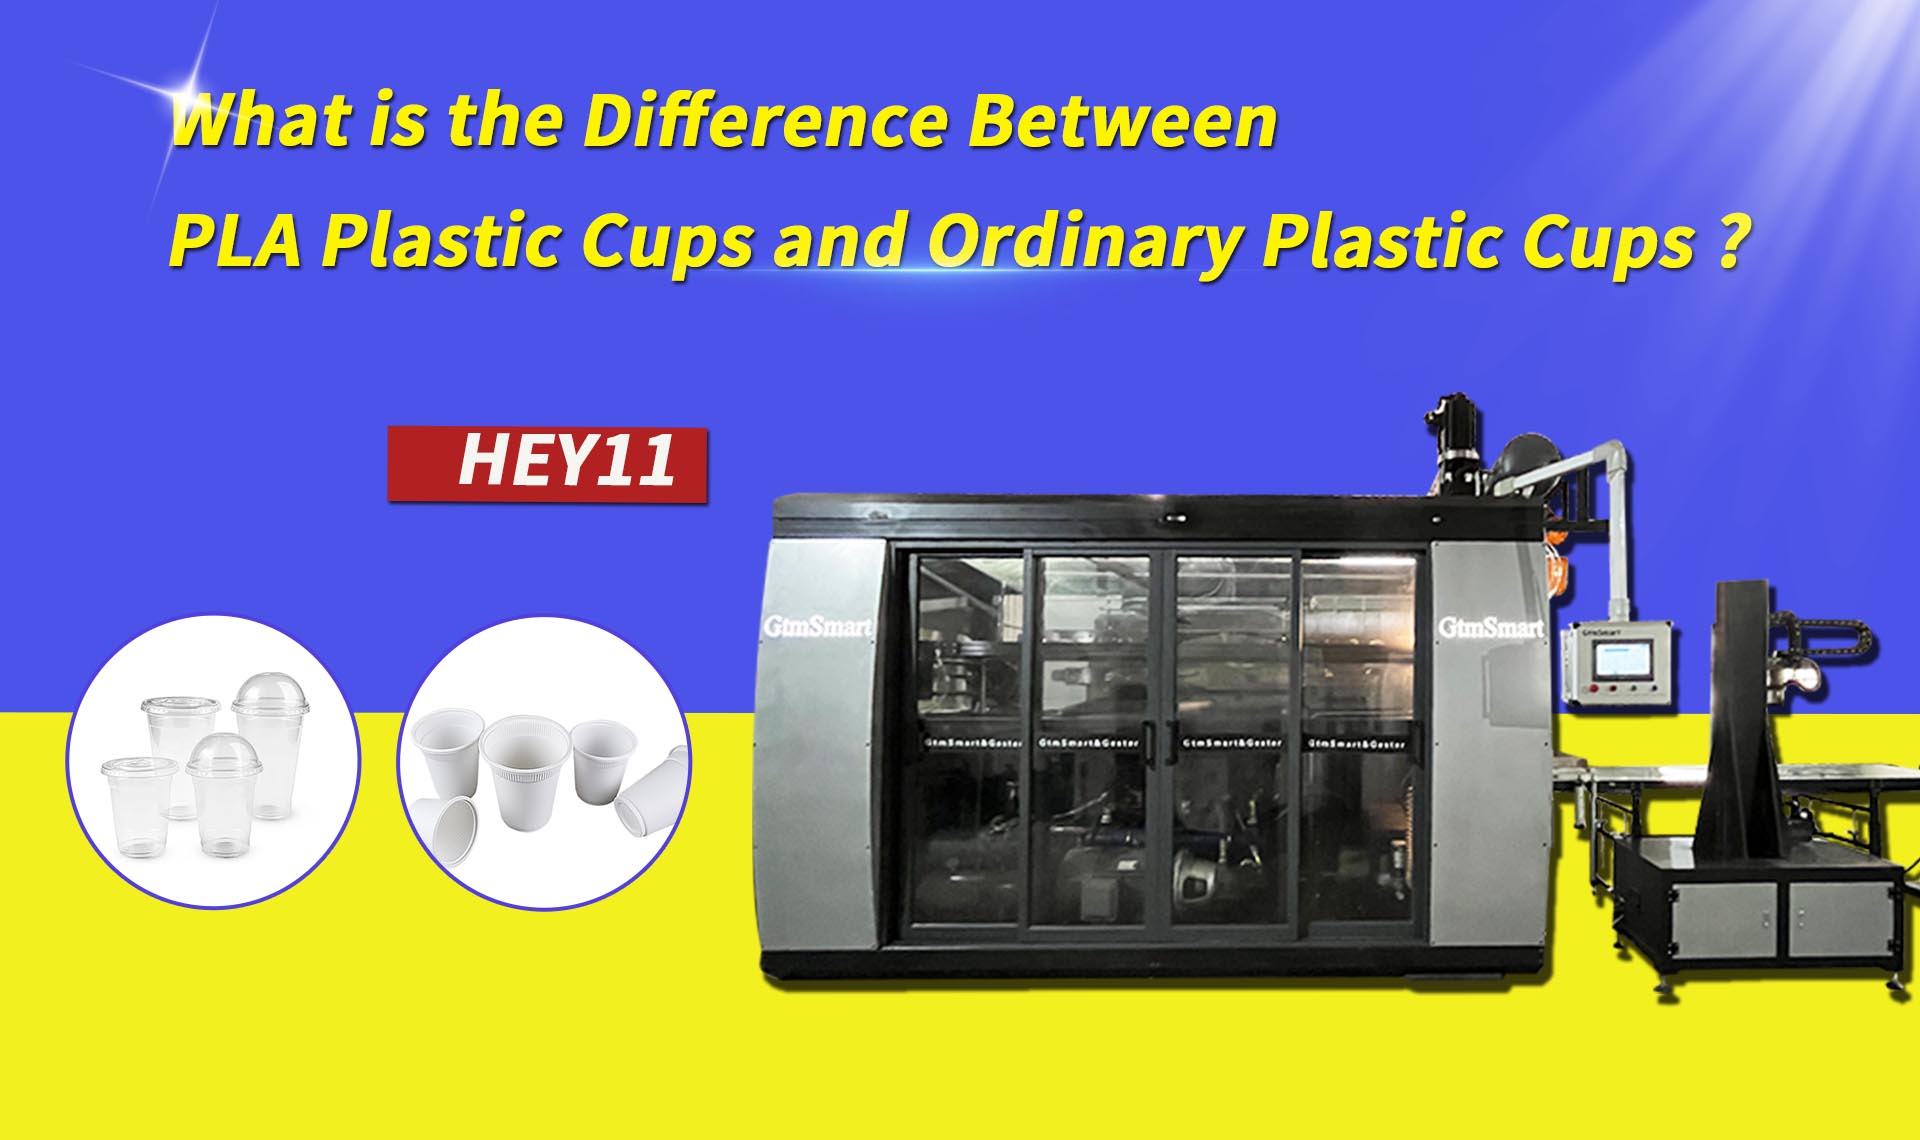 Koja je razlika između PLA plastičnih čaša i običnih plastičnih čaša?